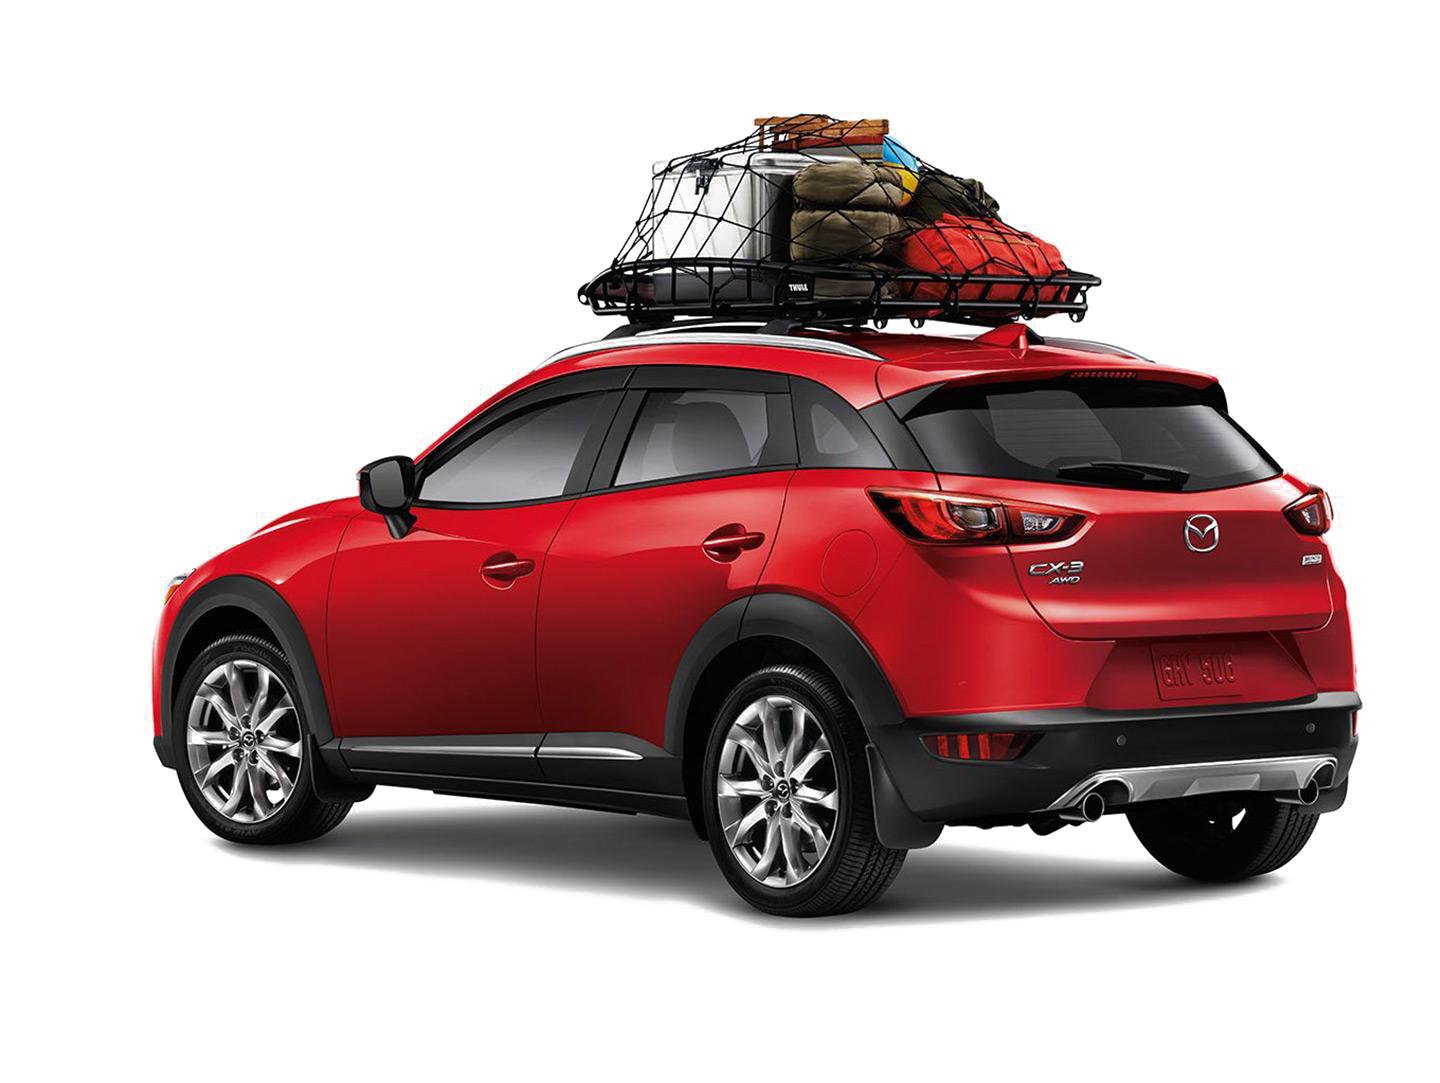 Mazda vehicle with roof rack